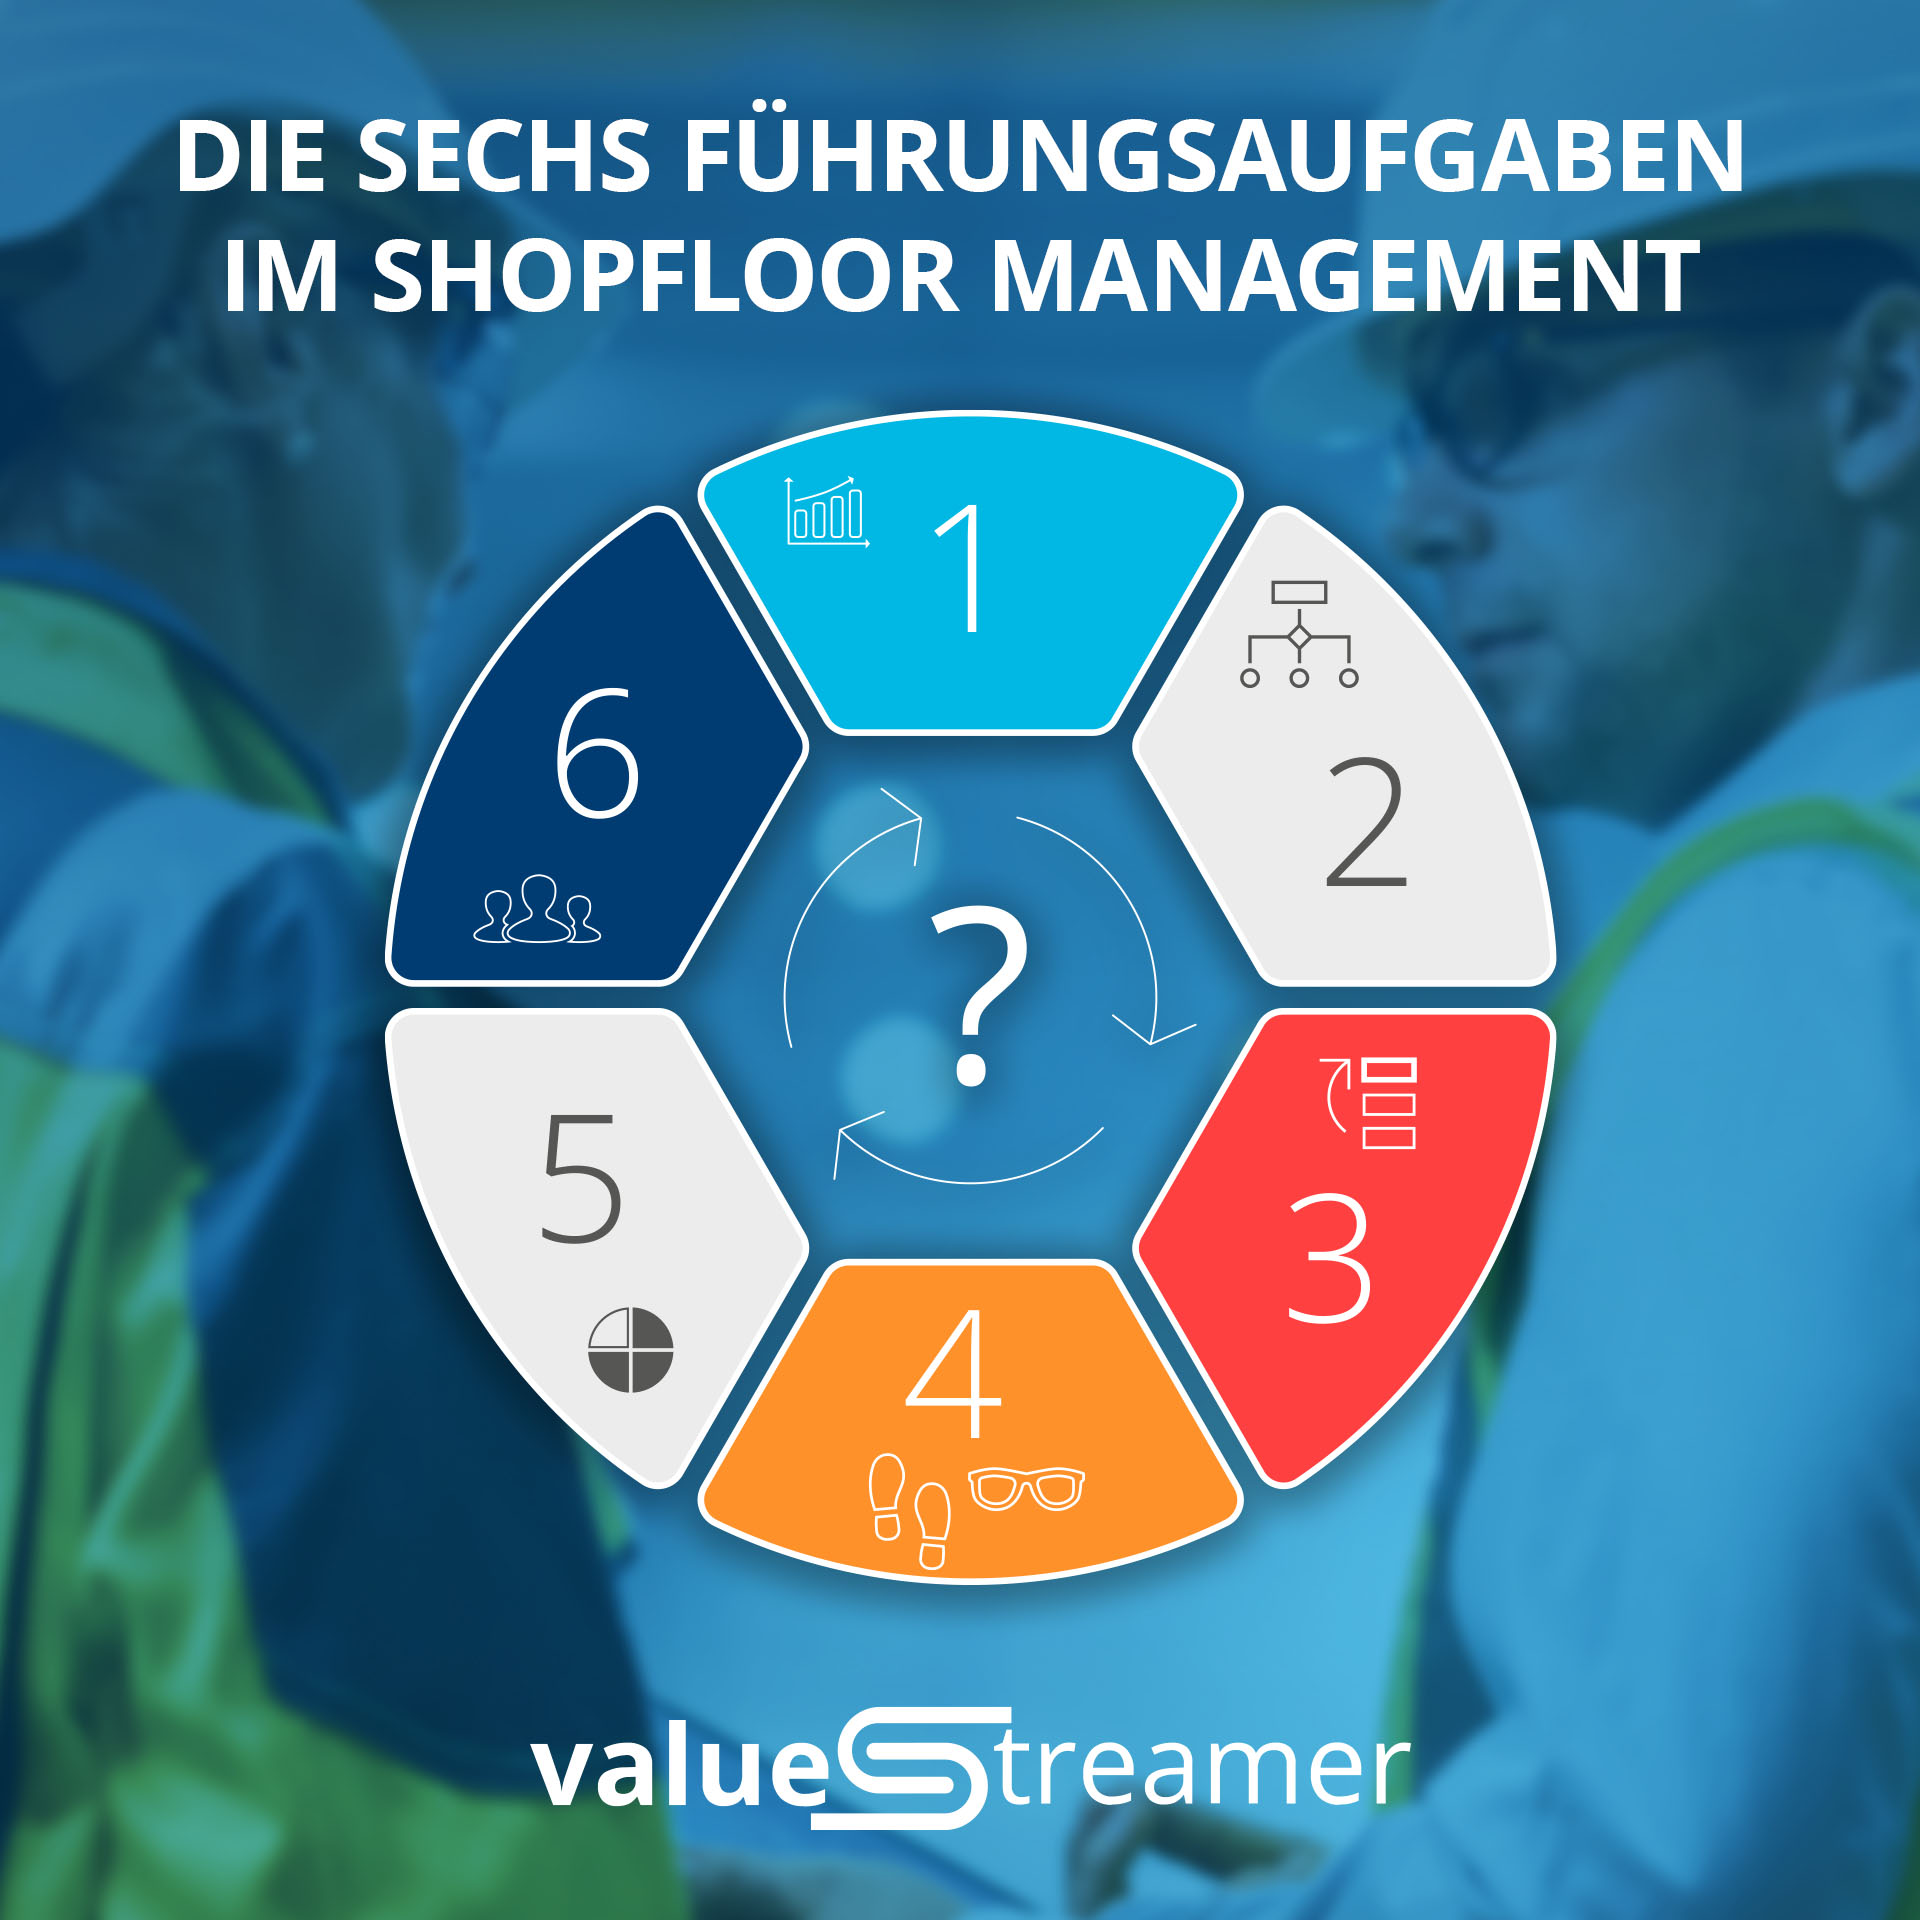 Fuehrungsaufgaben-SFM-ValueStreamer